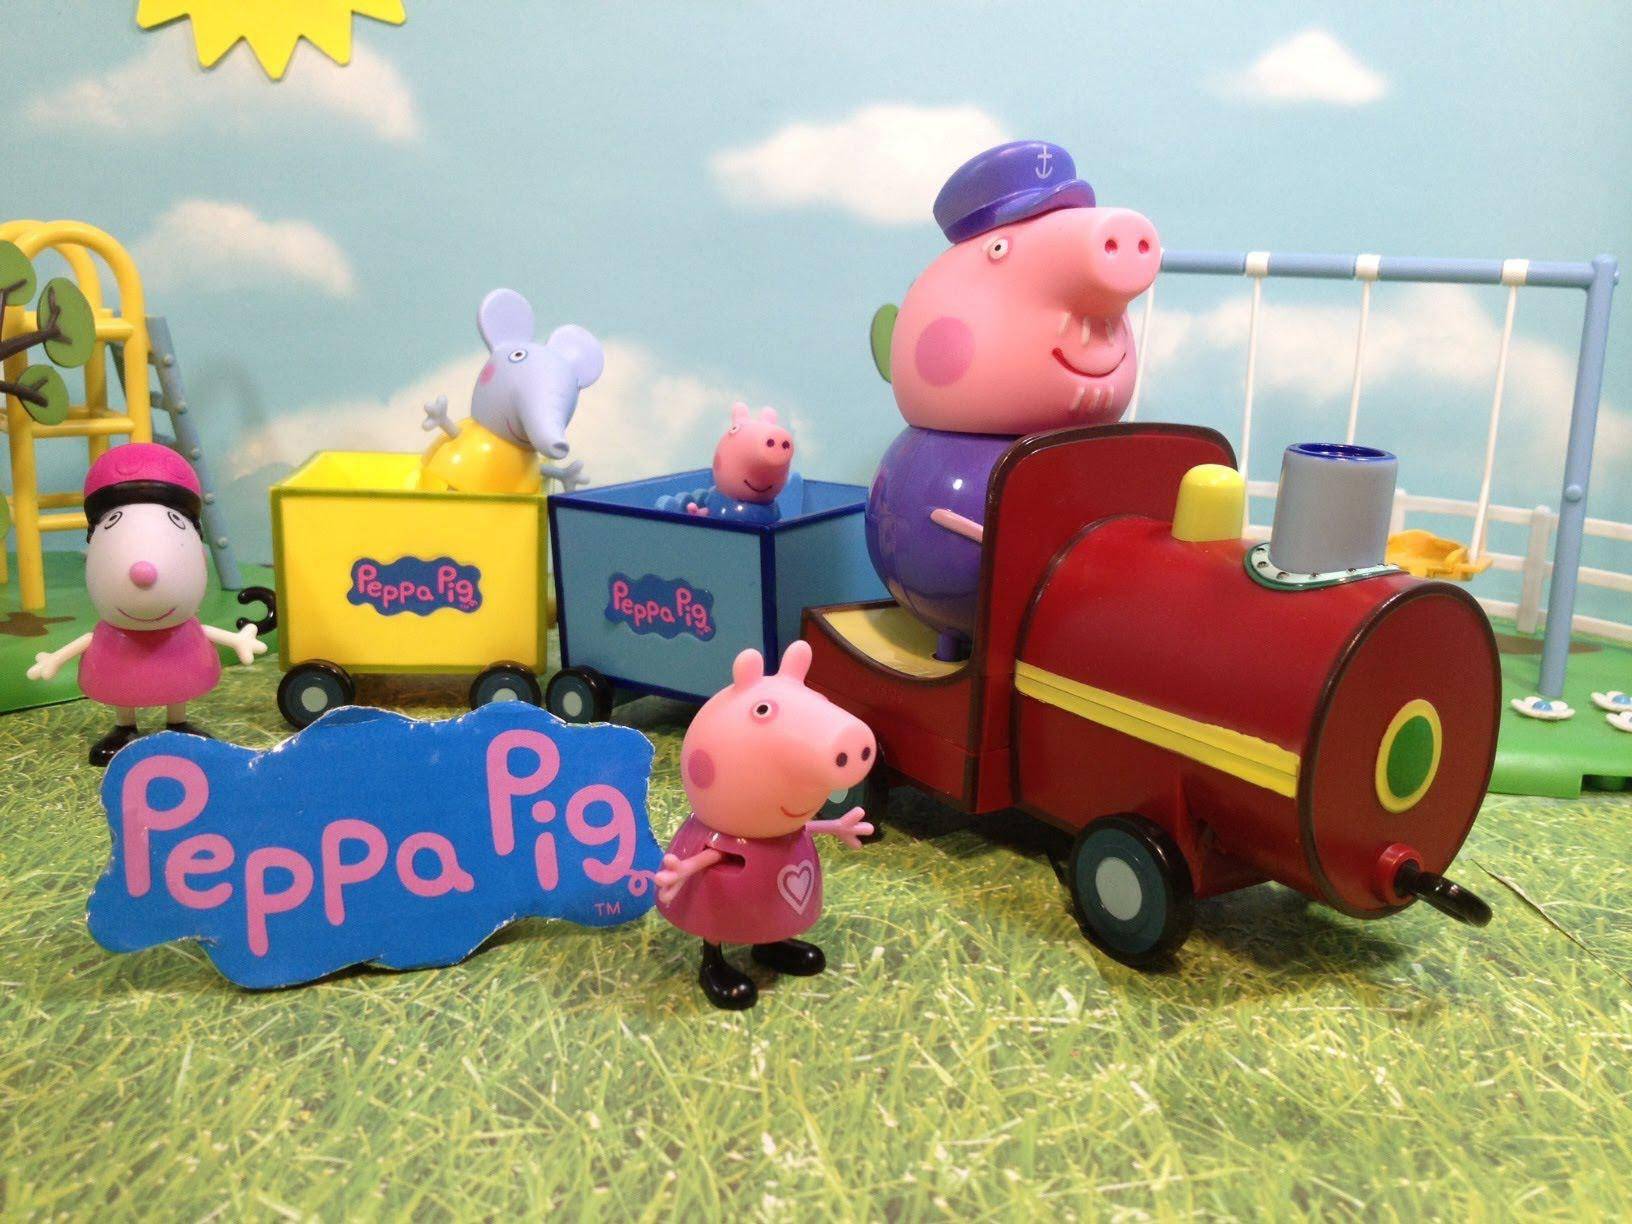 Свинка пеппа устраивает праздник! день рождения в стиле популярного мультфильма - как оформить помещение и сделать фото семьи свинки пеппы